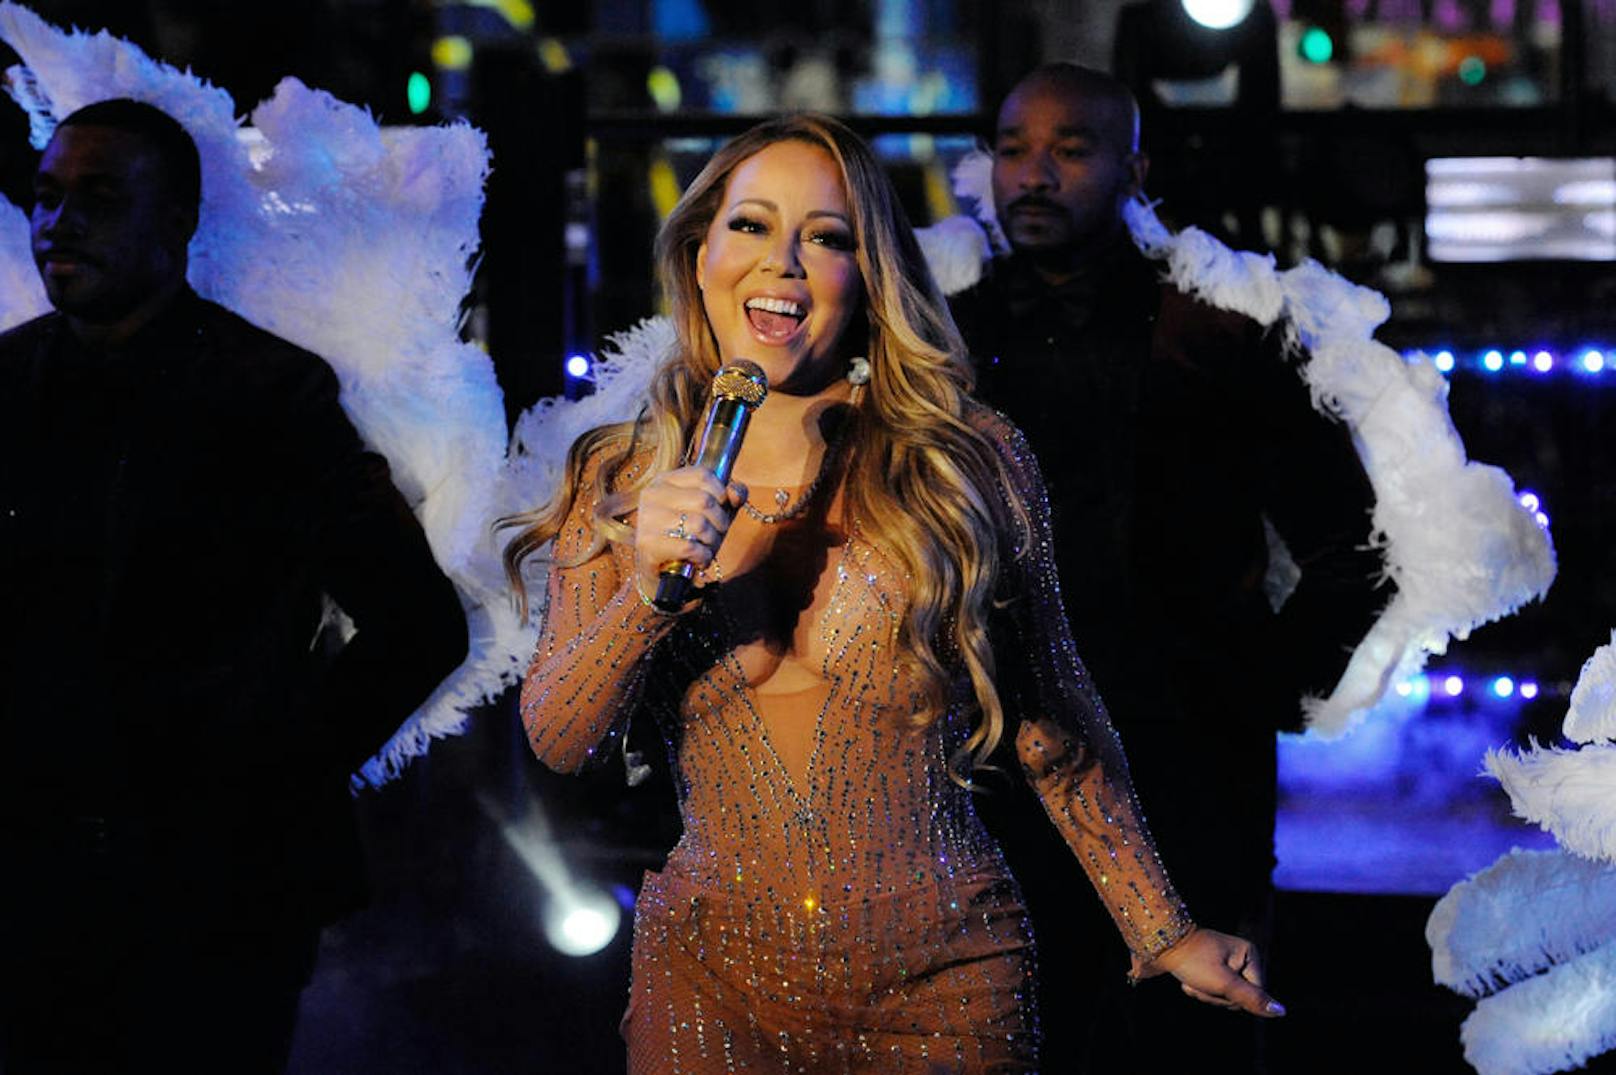 Virale Blamage: Mariah Carey blamierte sich zum Jahreswechsel 2016/17 bei ihrem Neujahrsauftritt. Das Video zum Fremdschämen wurde sofort viral.